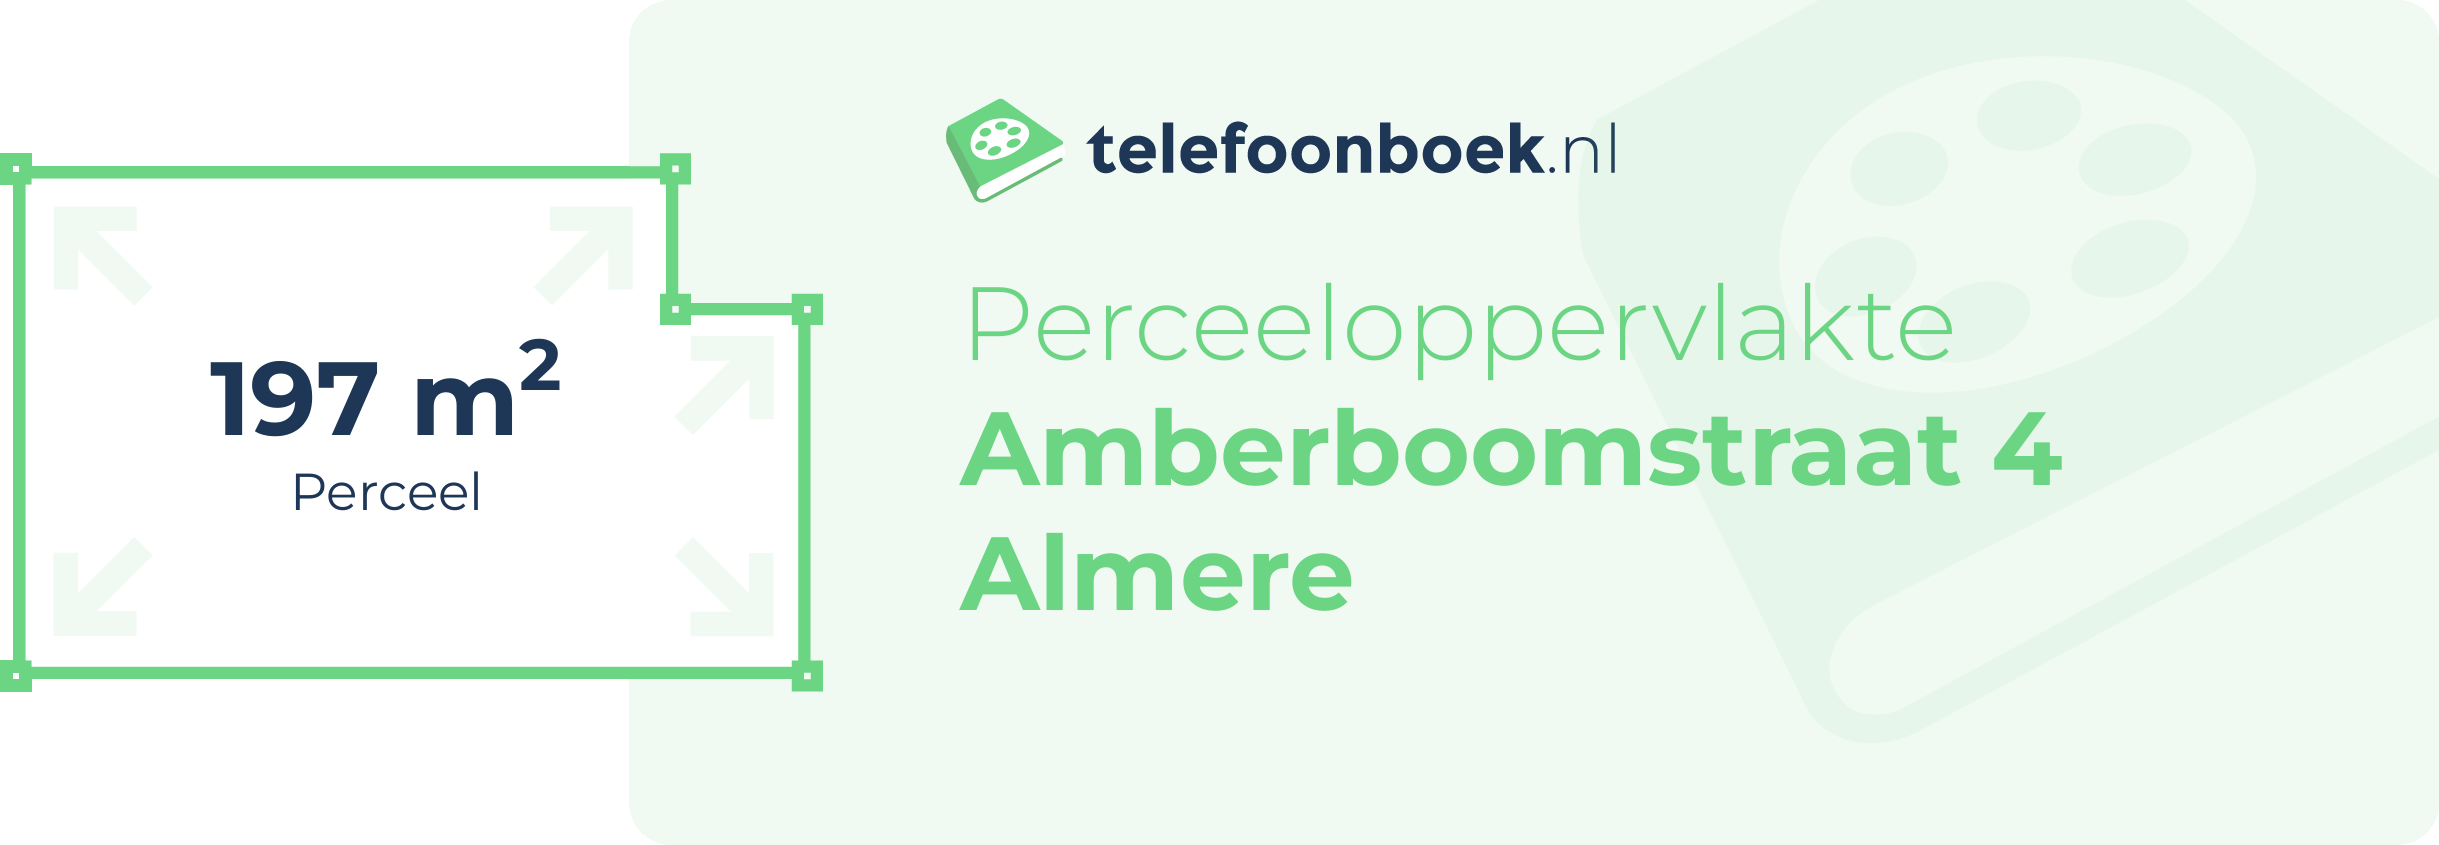 Perceeloppervlakte Amberboomstraat 4 Almere